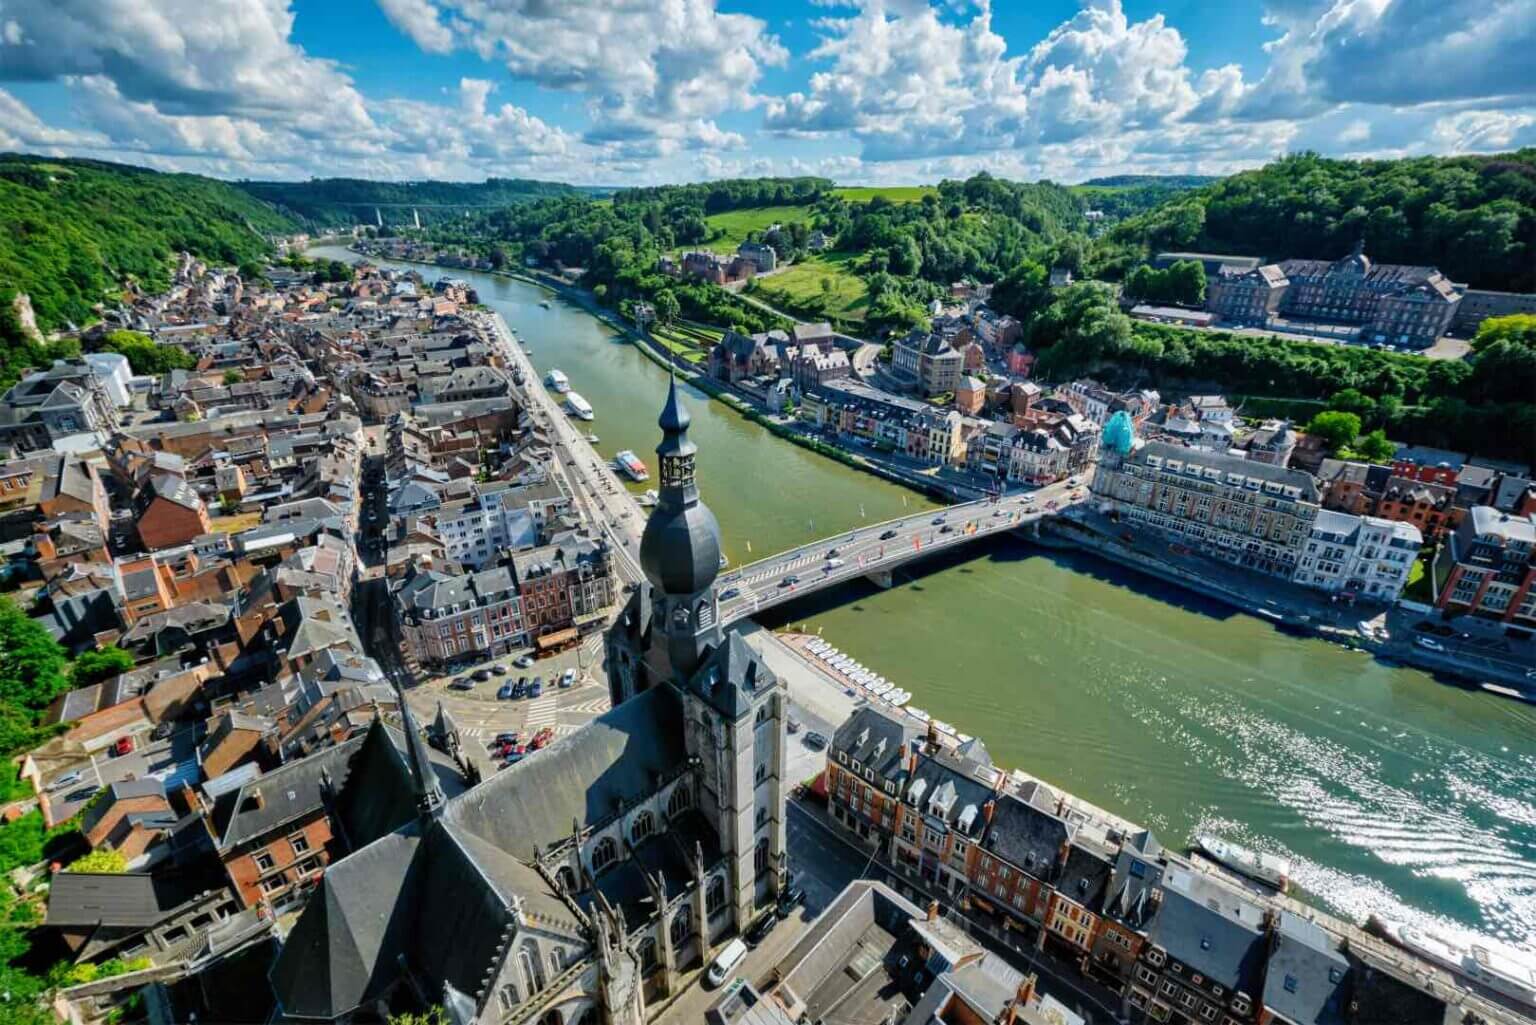 The Town of Dinant, Belgium